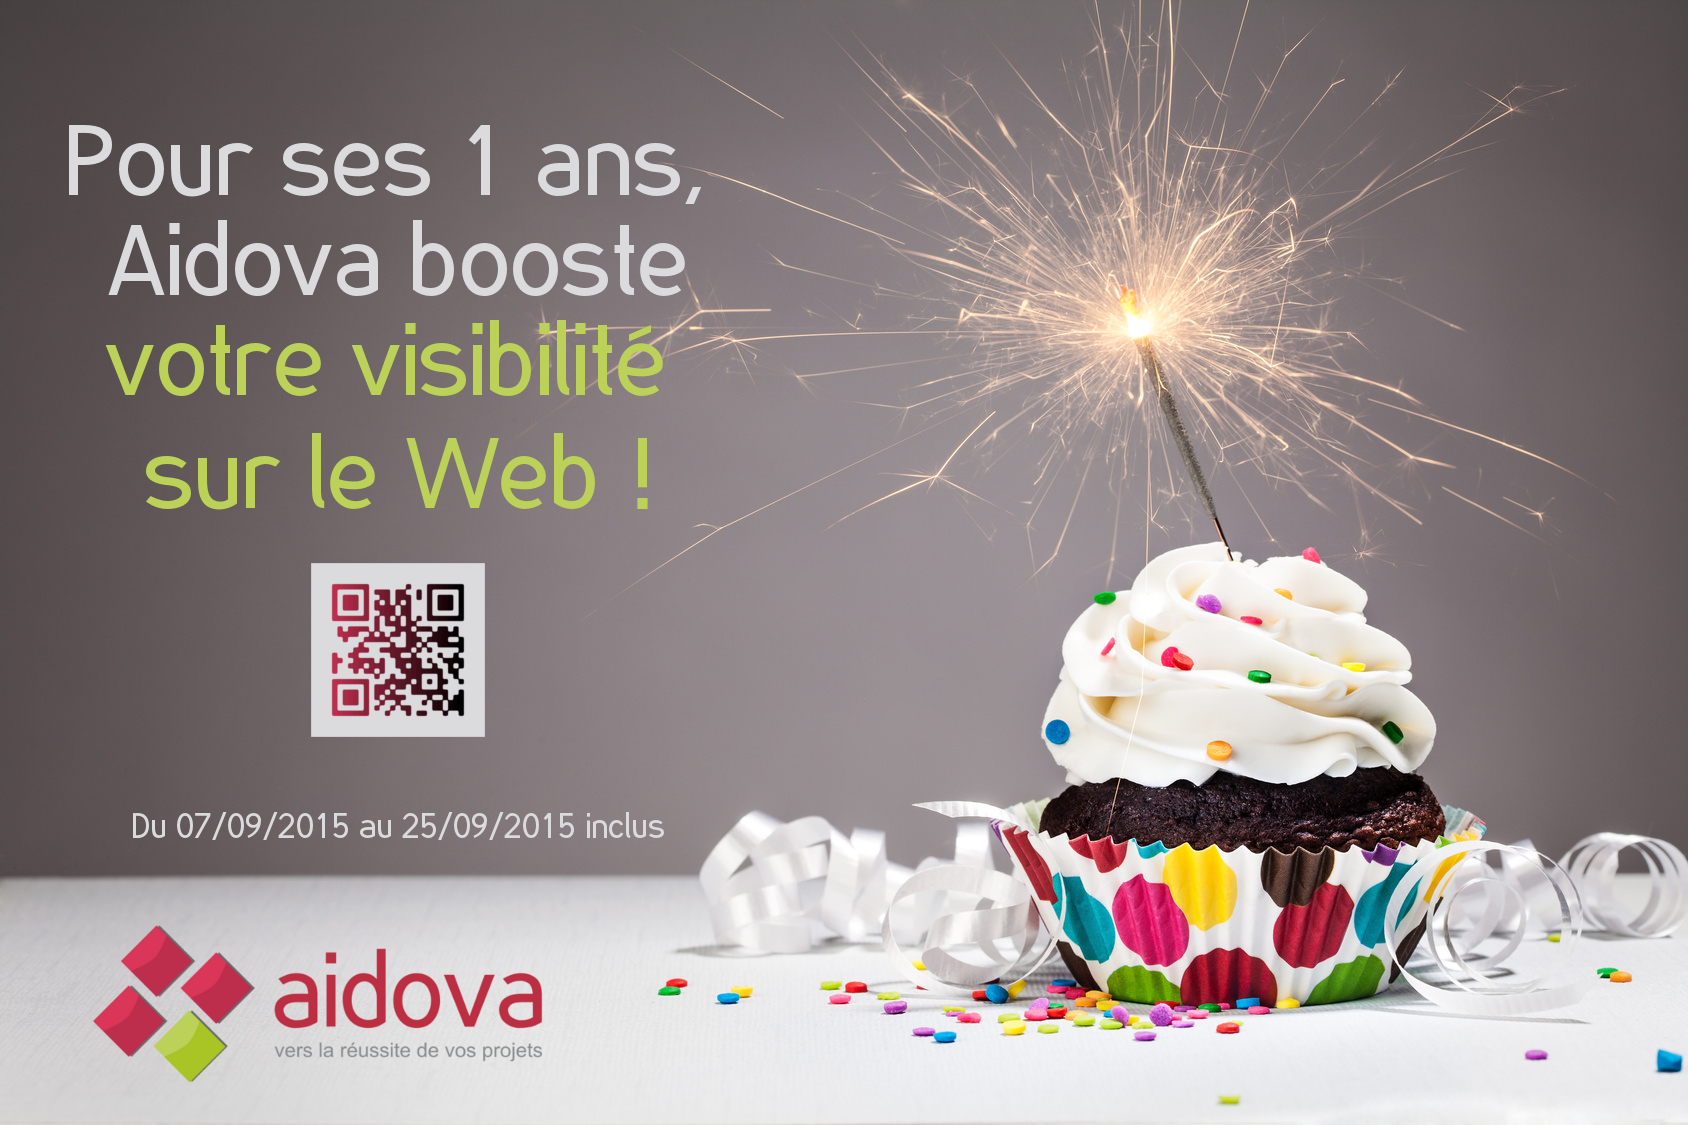 Pour ses 1 ans, Aidova booste votre visibilité sur le Web !